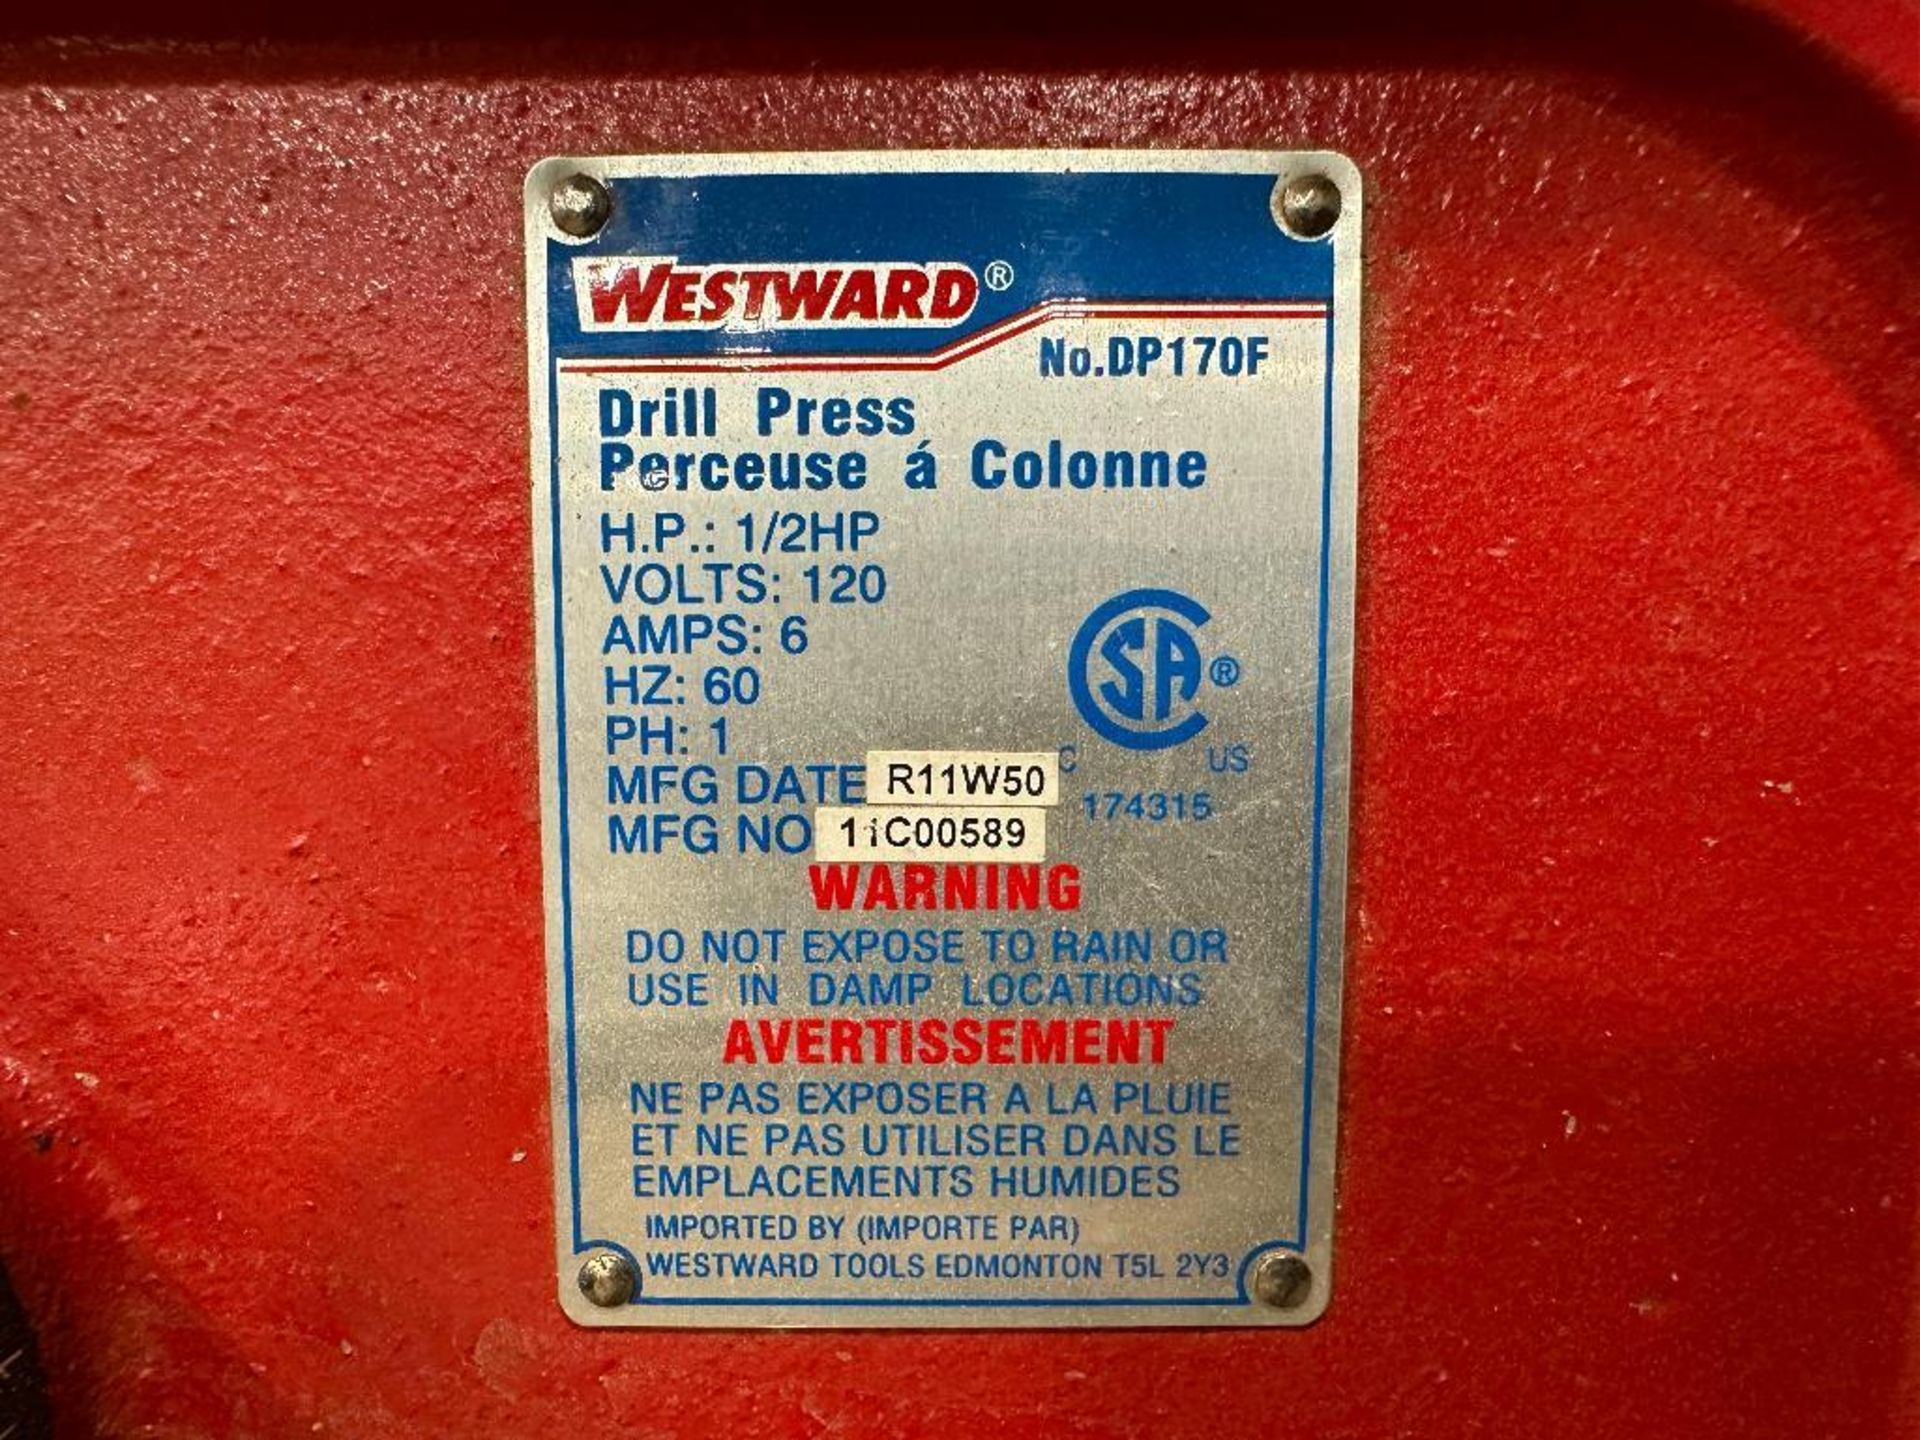 Westward DP 170F Drill Press 1/2HP, 120V, 6A - Image 4 of 4